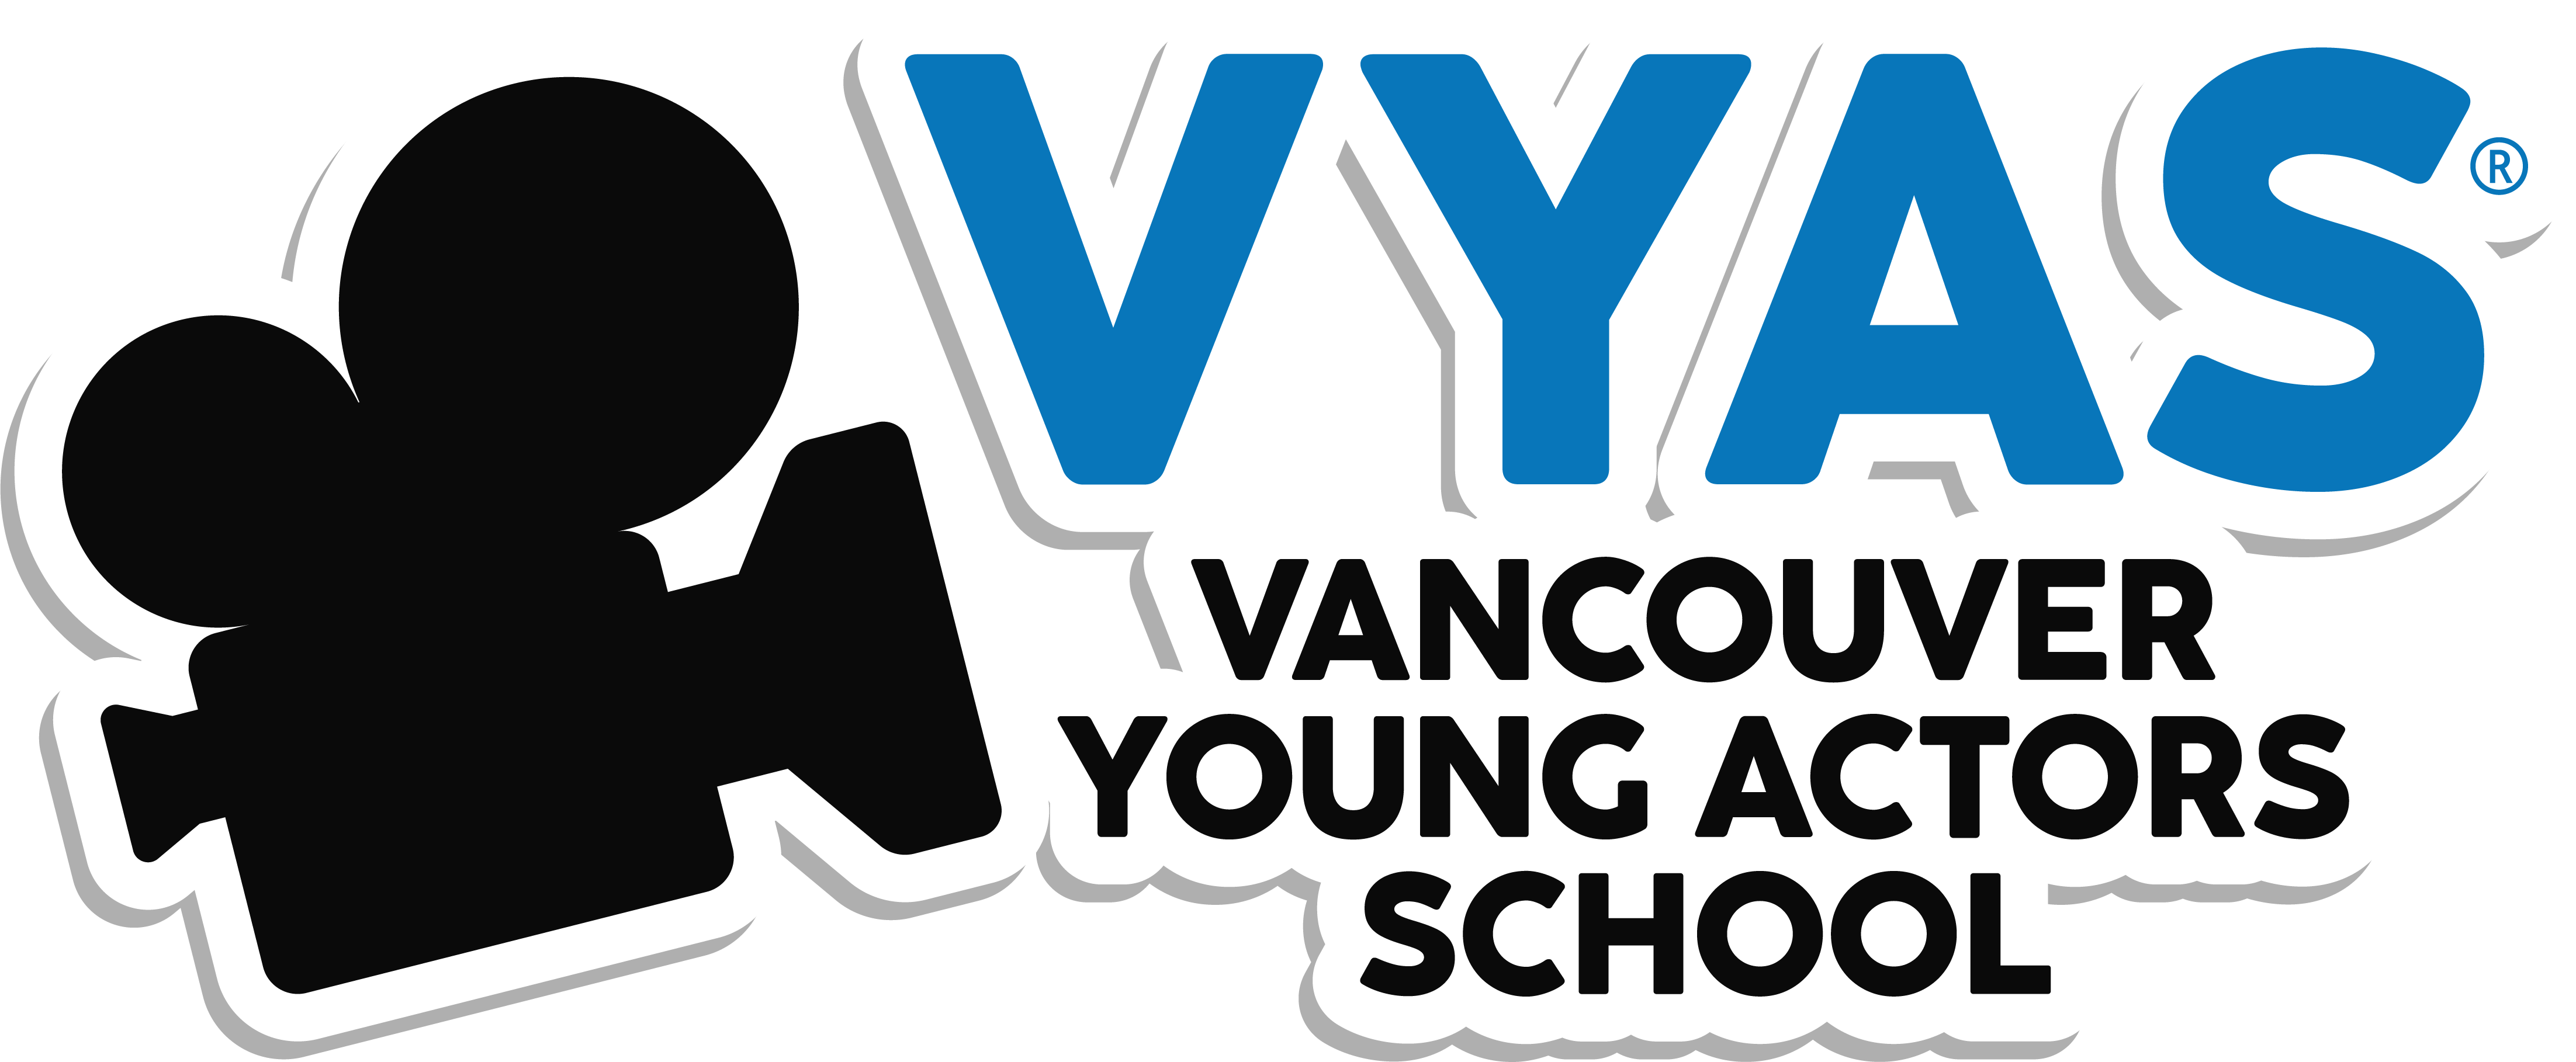 Vancouver Young Actors School - Logo